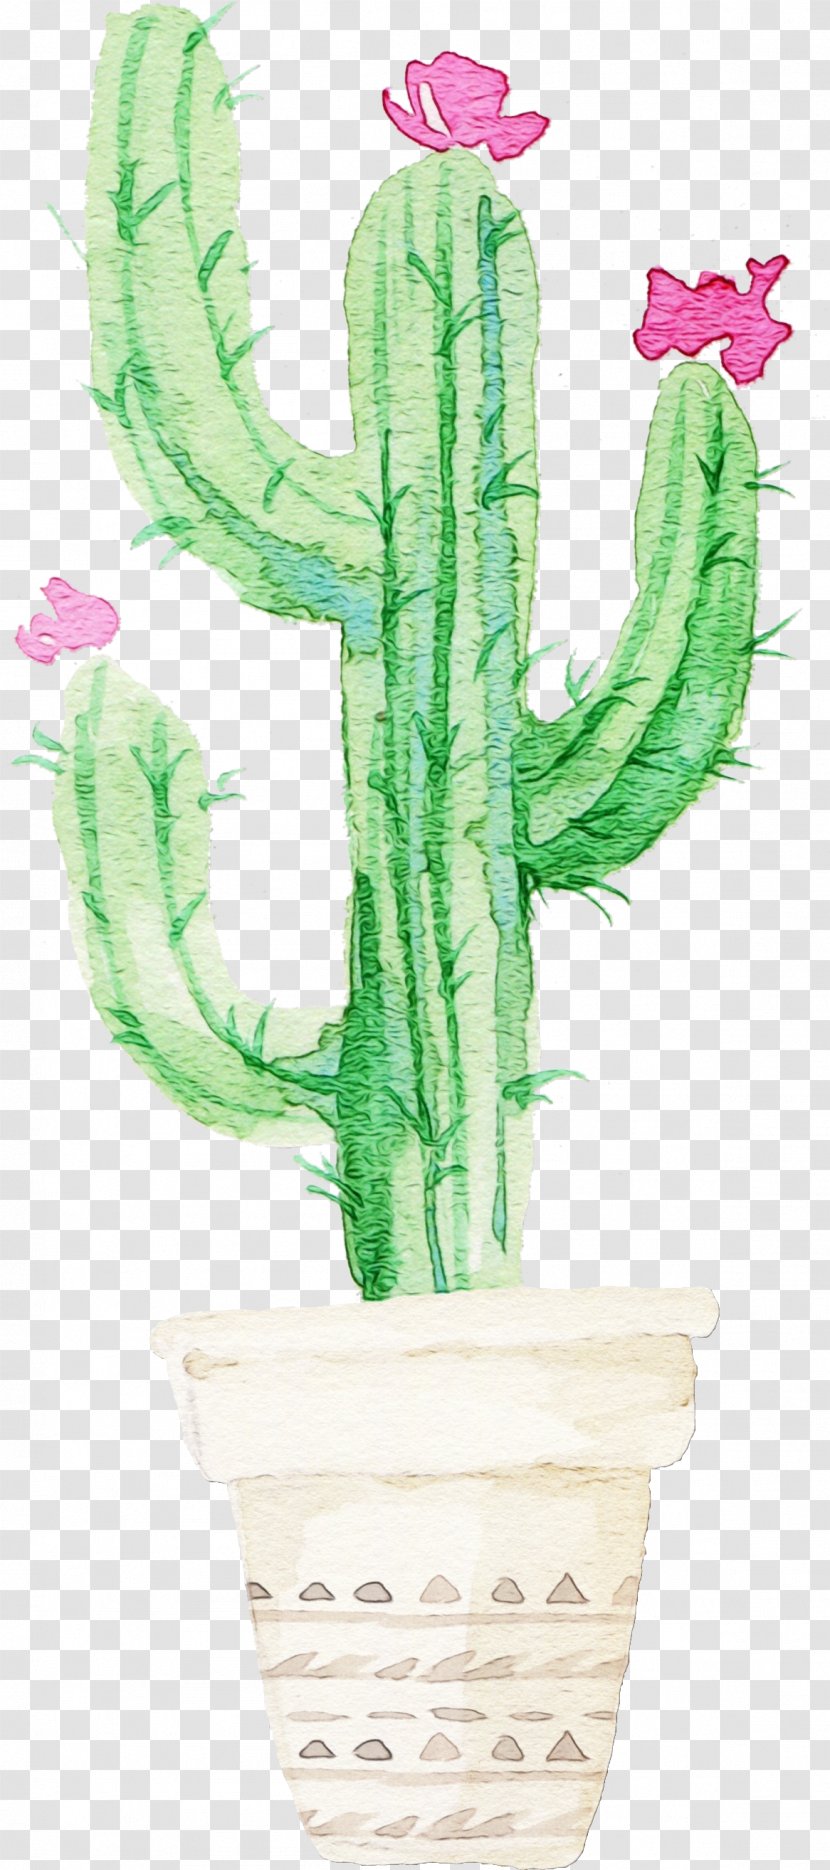 Cactus - Flowerpot - Houseplant Terrestrial Plant Transparent PNG